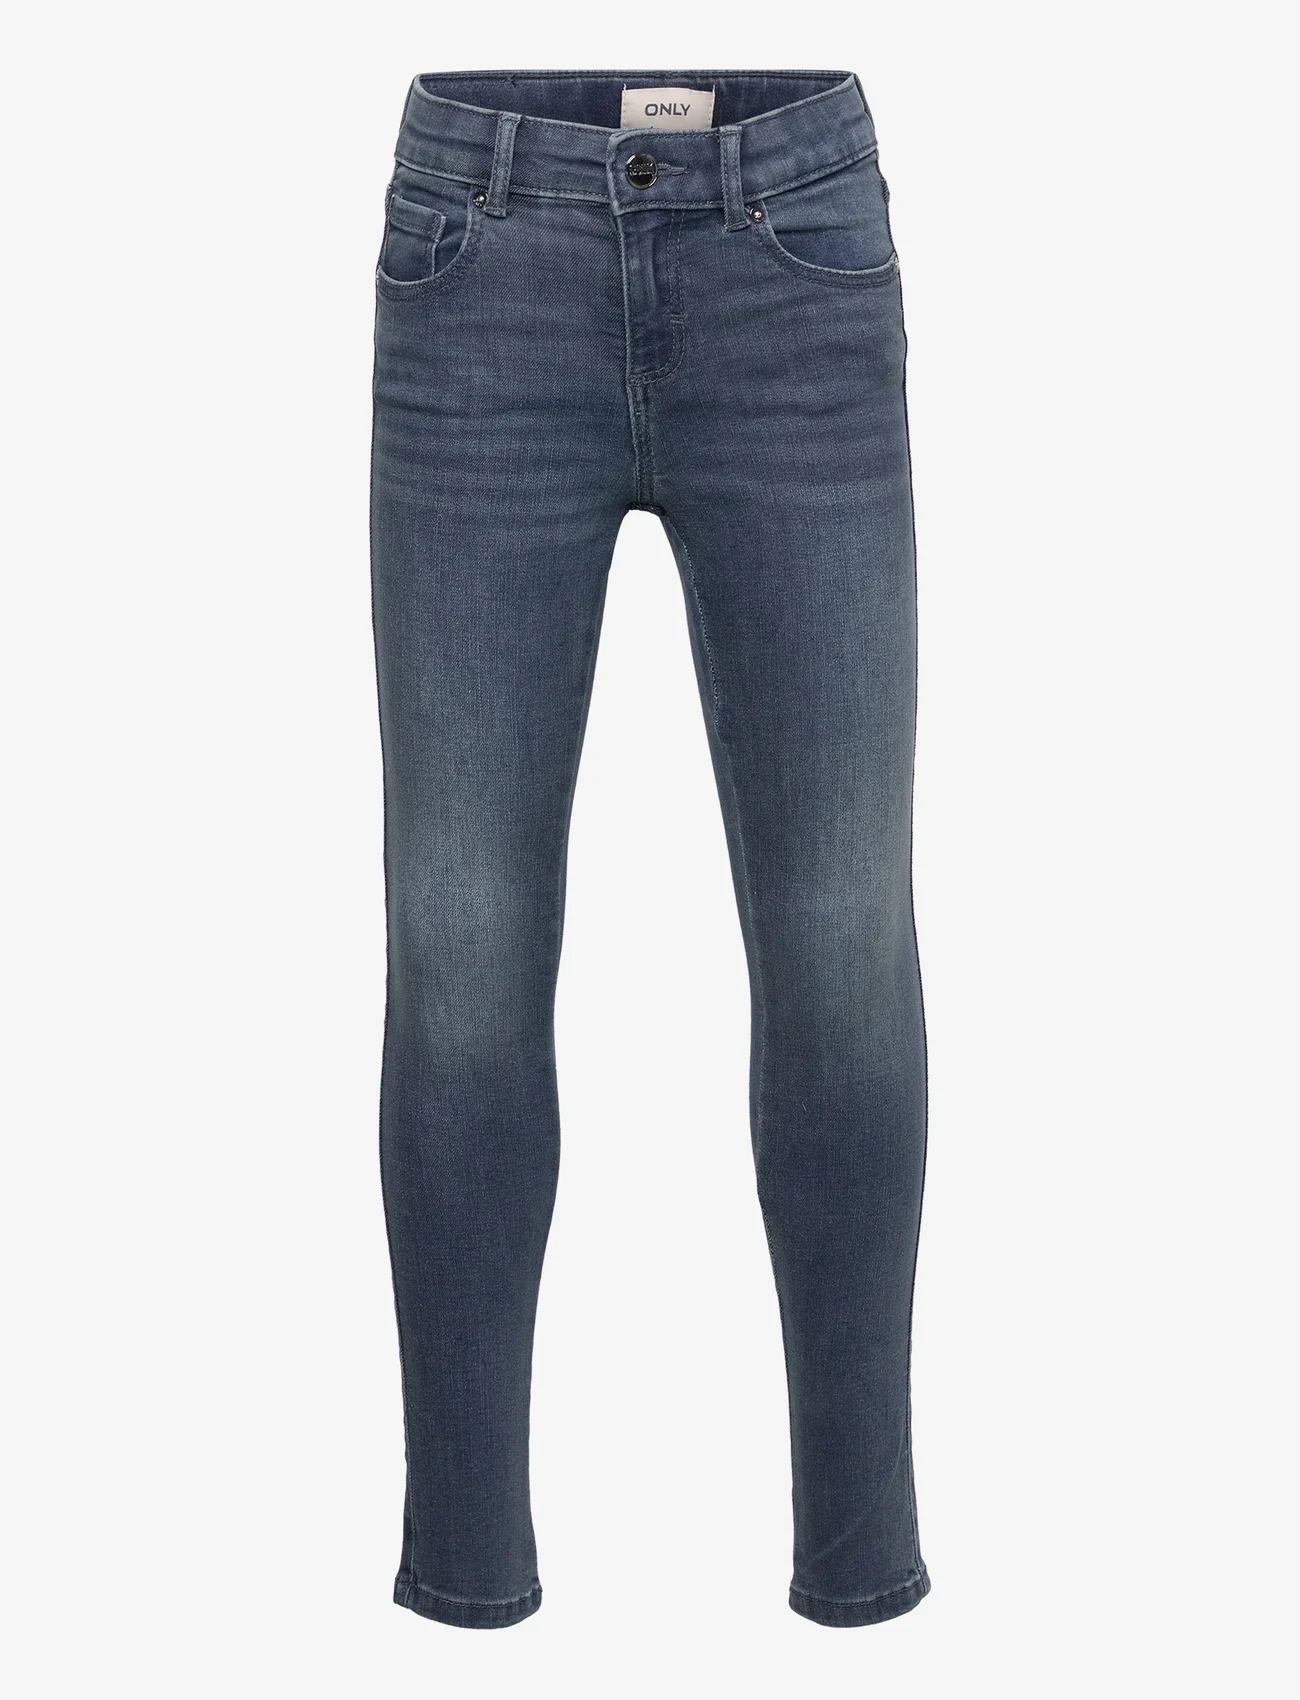 Kids Only - KOGRACHEL SKINNY DNM BJ521 - skinny jeans - blue black denim - 0